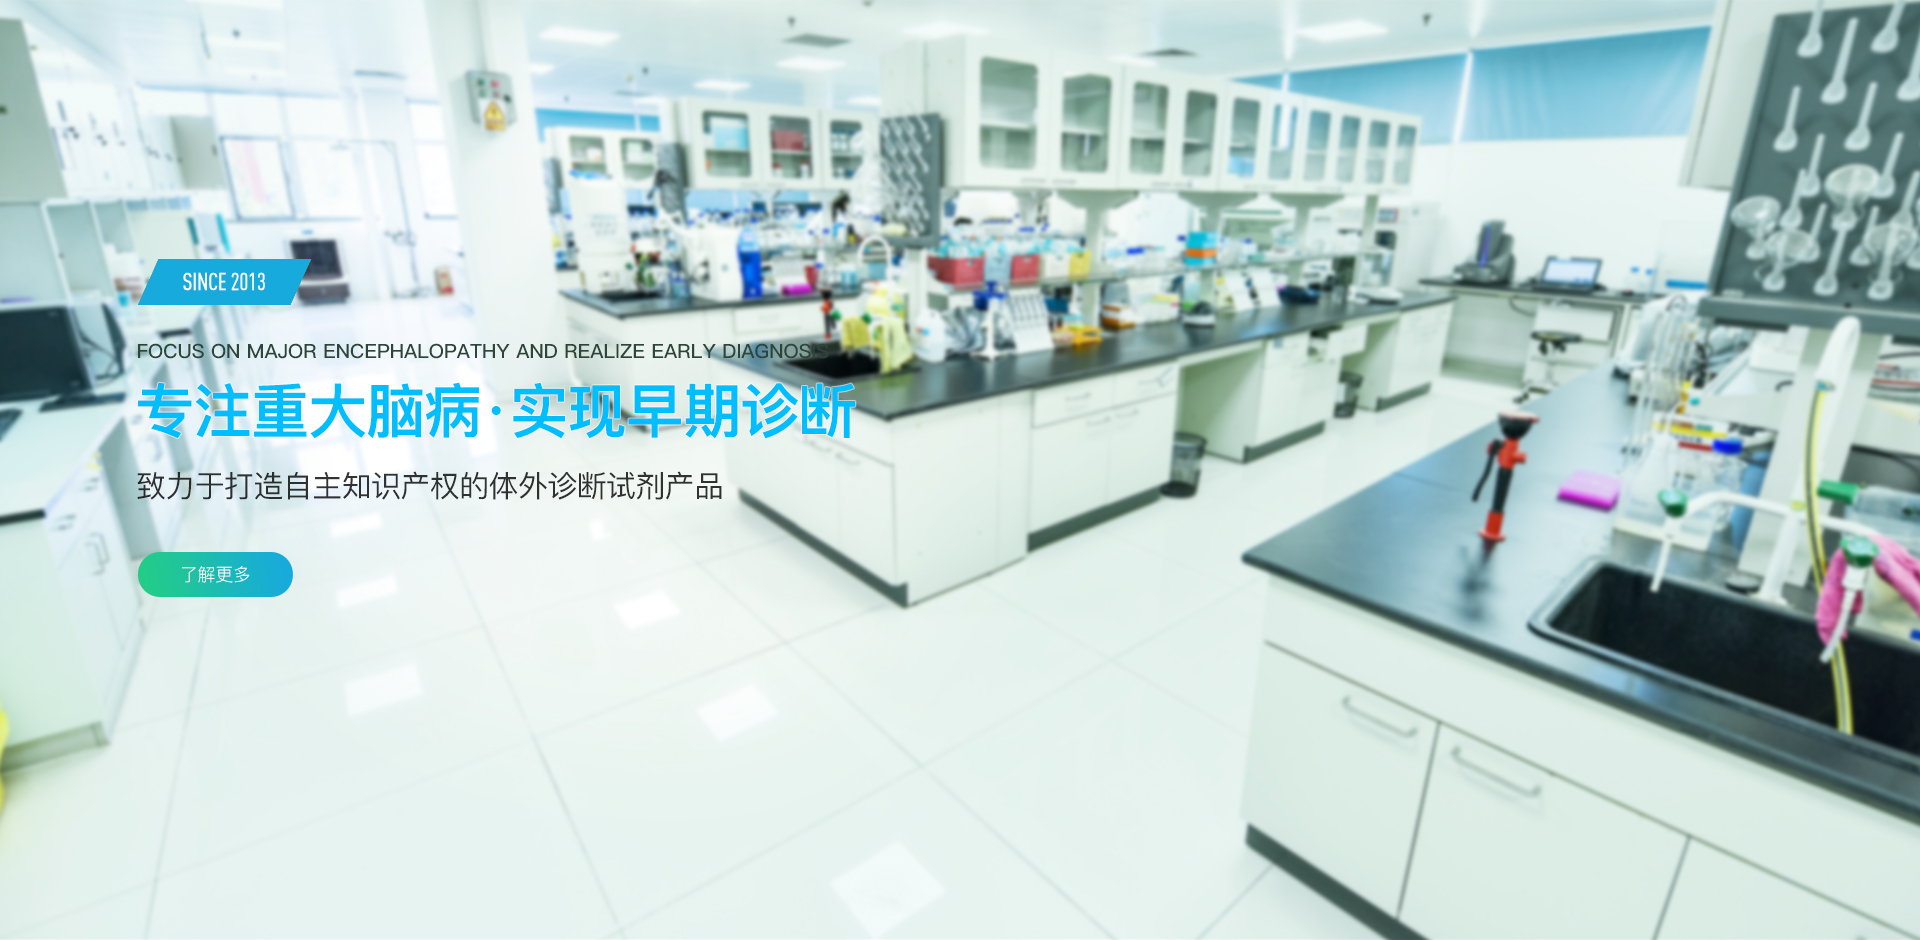 流式细胞仪 、分子检测仪 、医学检验服务 、生物科技研发 、北京尊龙凯时